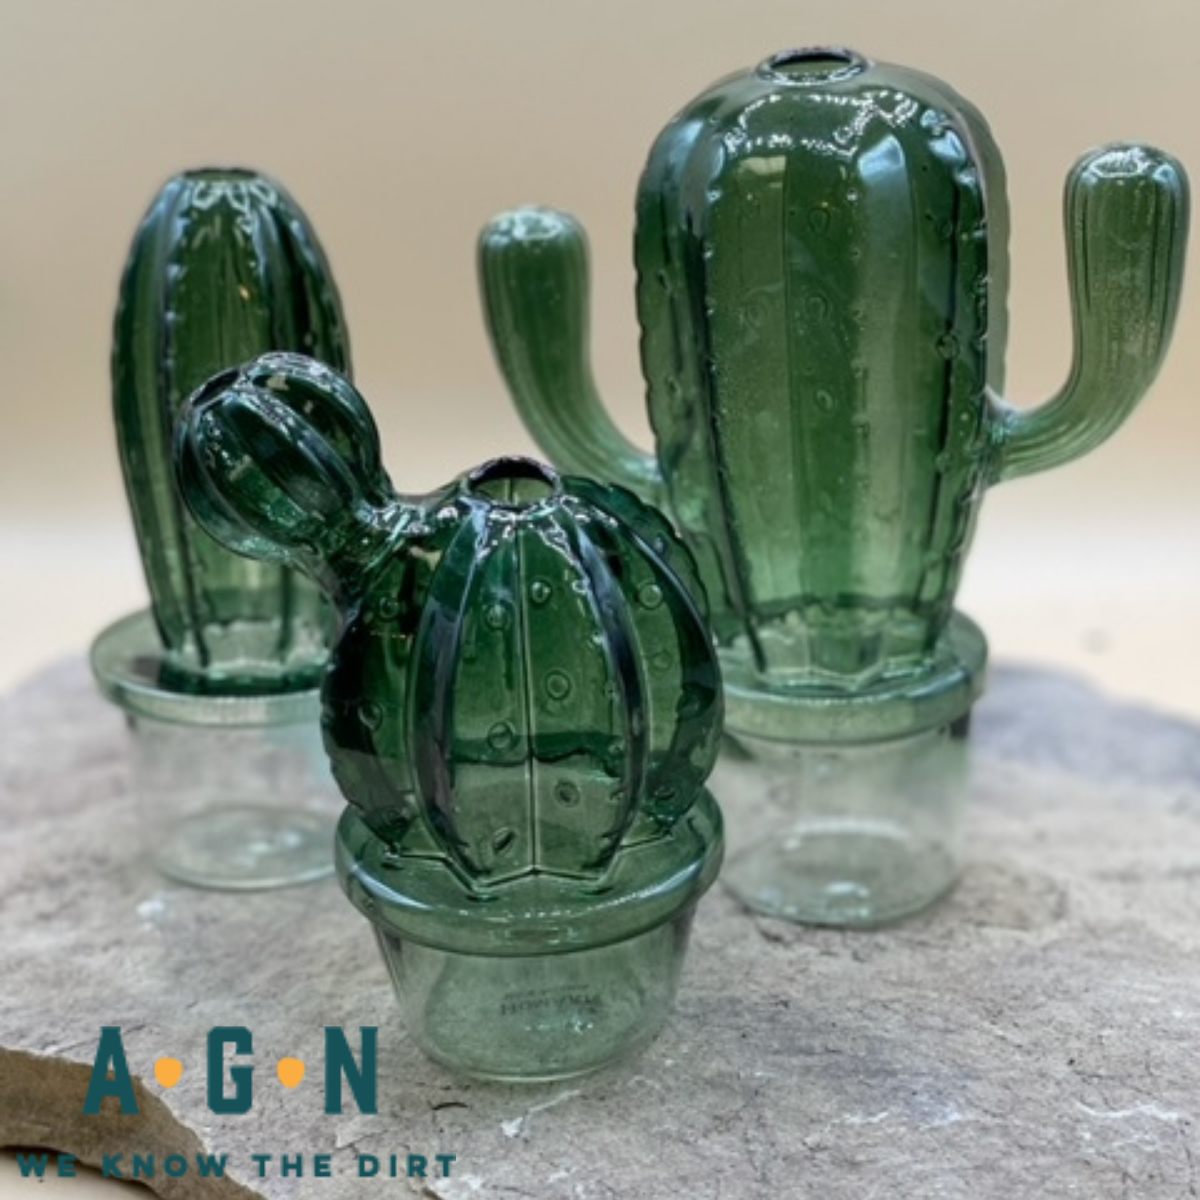 Cactus Vase, Glass